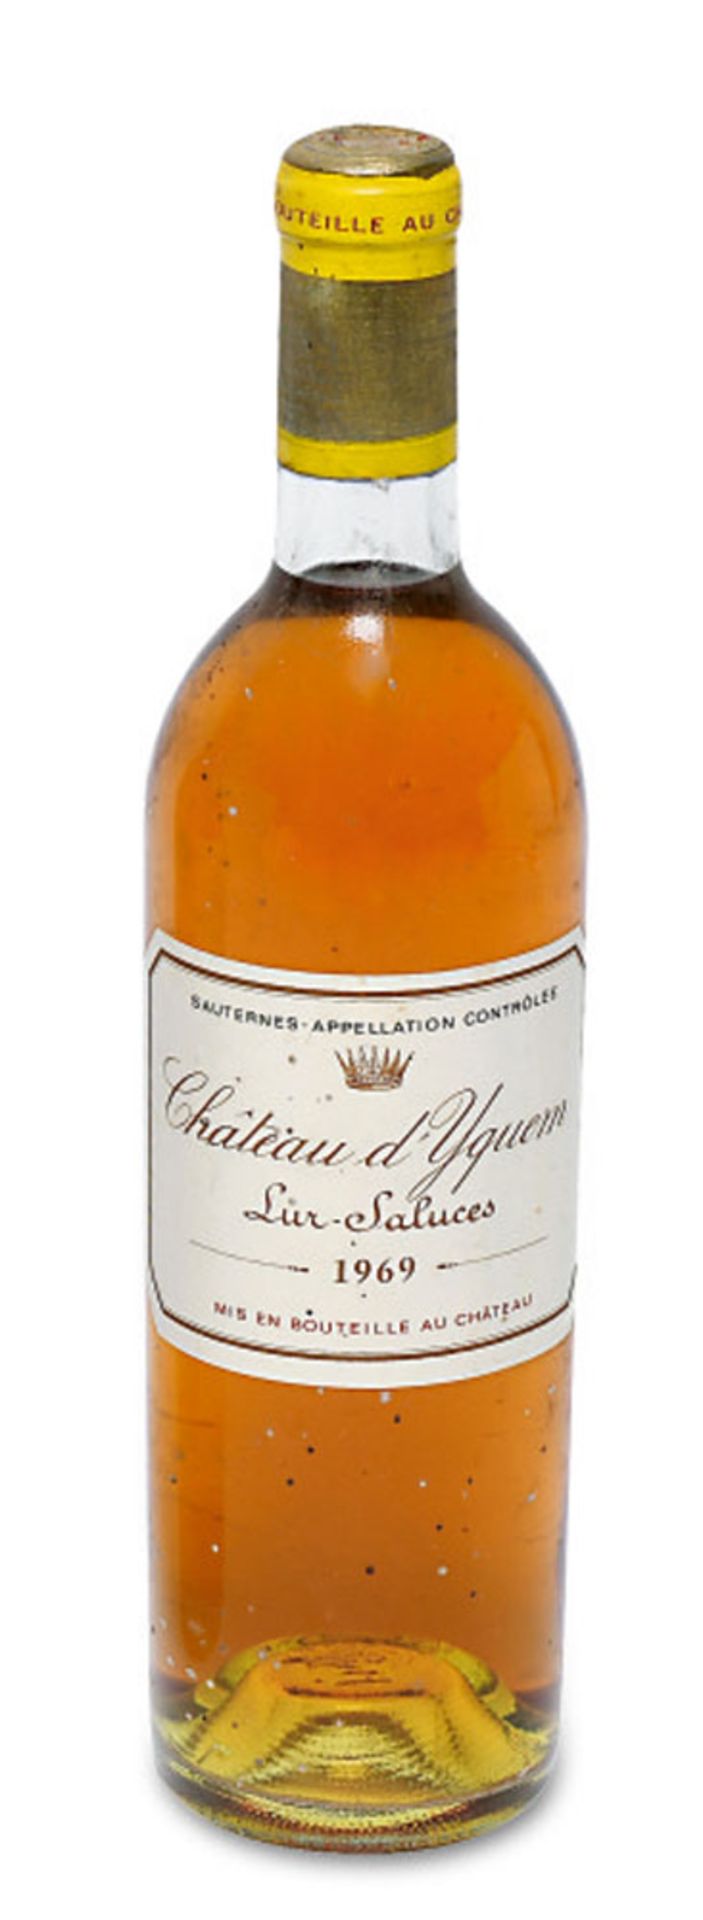 Eine Flasche Château d'YquemBordeaux, FrankreichLur-Saluces, Sauternes.Jahrgang: 1969.Originale